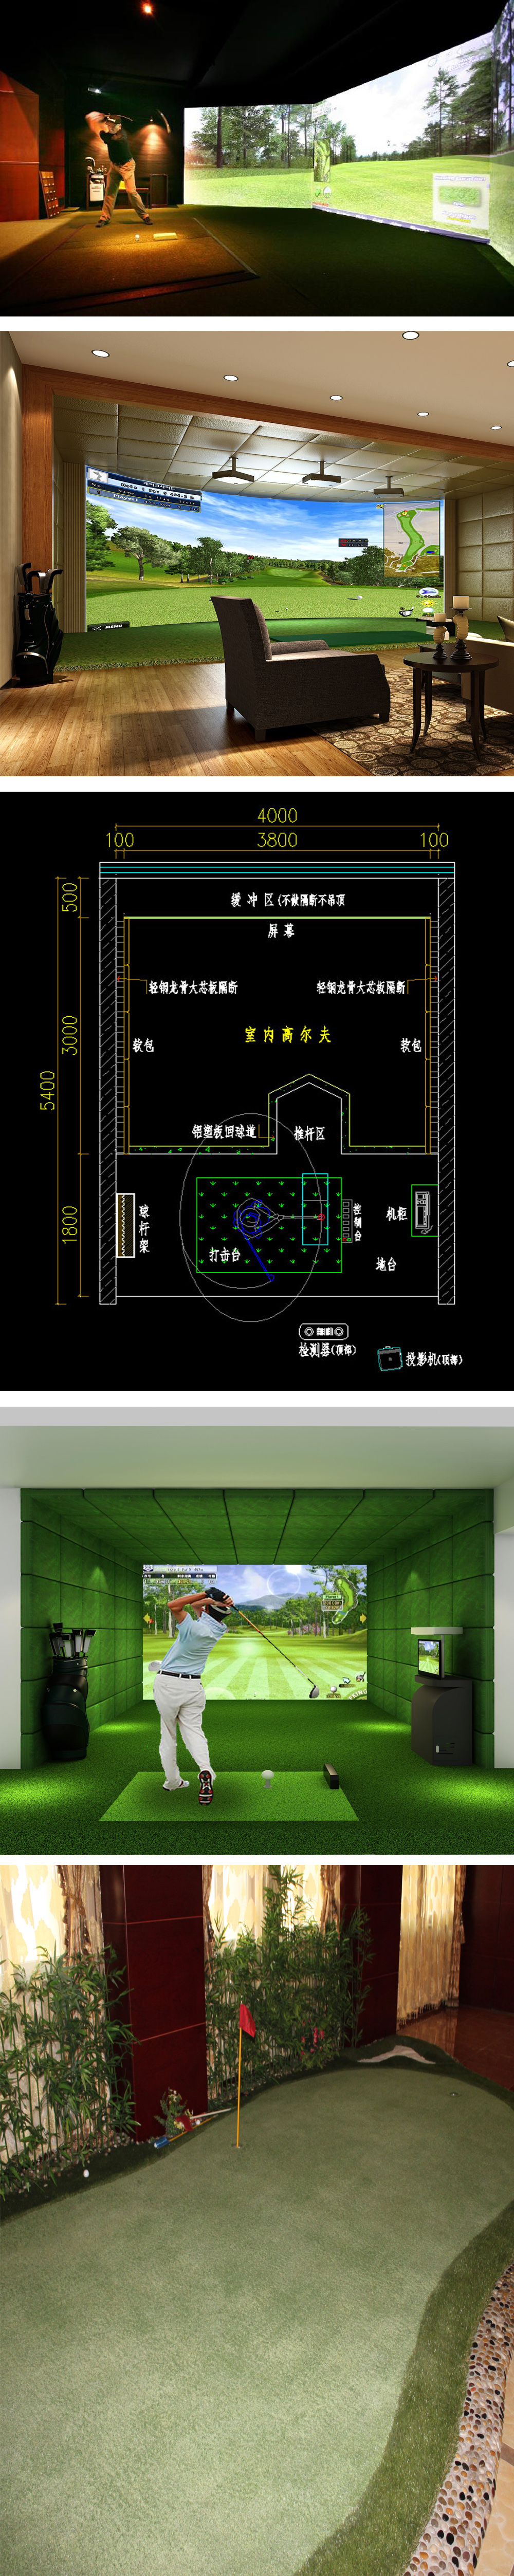 高尔夫室内模拟球场 三.jpg